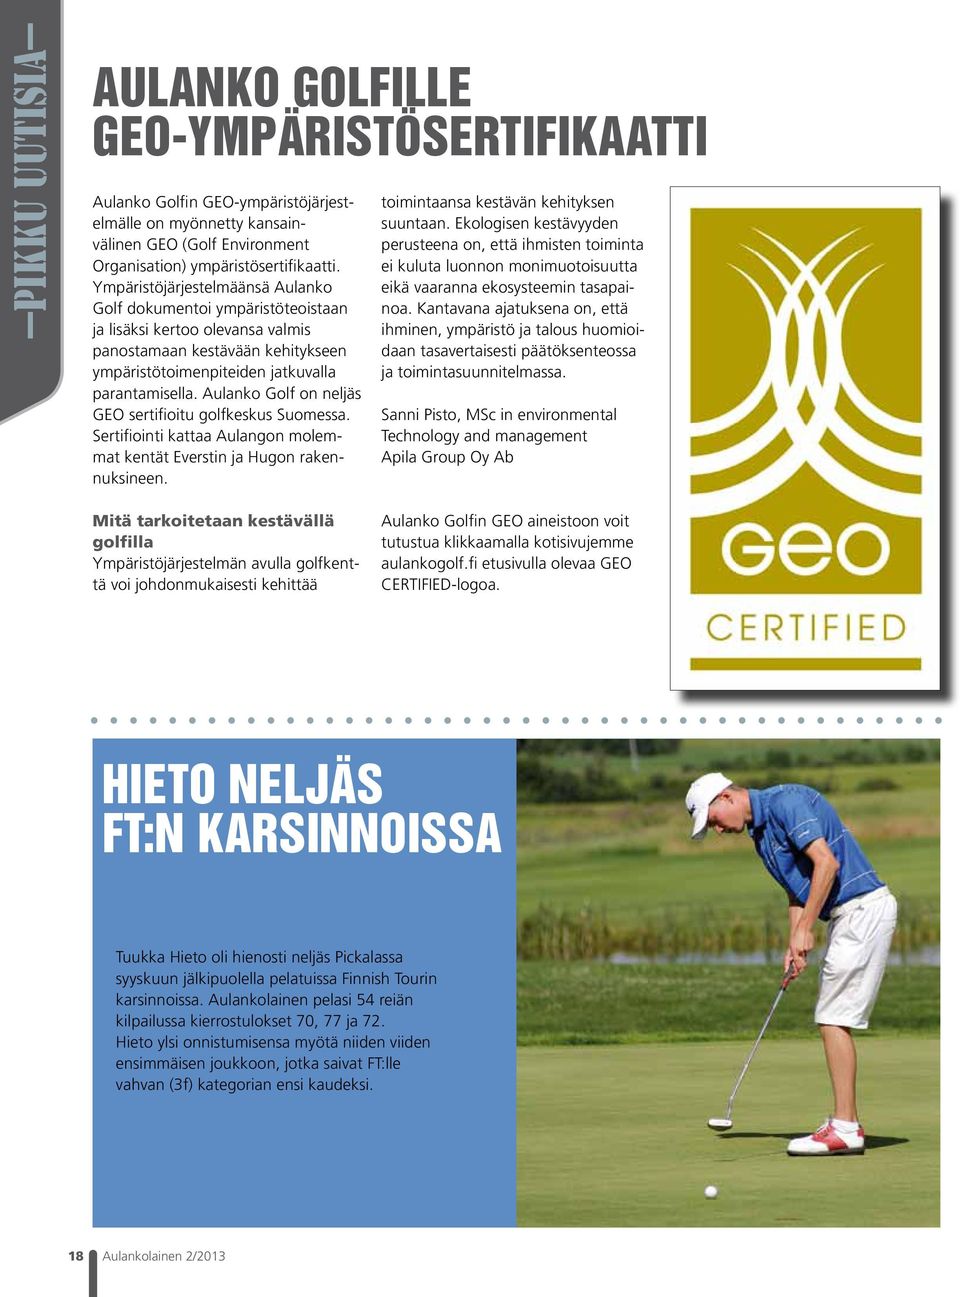 Aulanko Golf on neljäs GEO sertifioitu golfkeskus Suomessa. Sertifiointi kattaa Aulangon molemmat kentät Everstin ja Hugon rakennuksineen. toimintaansa kestävän kehityksen suuntaan.